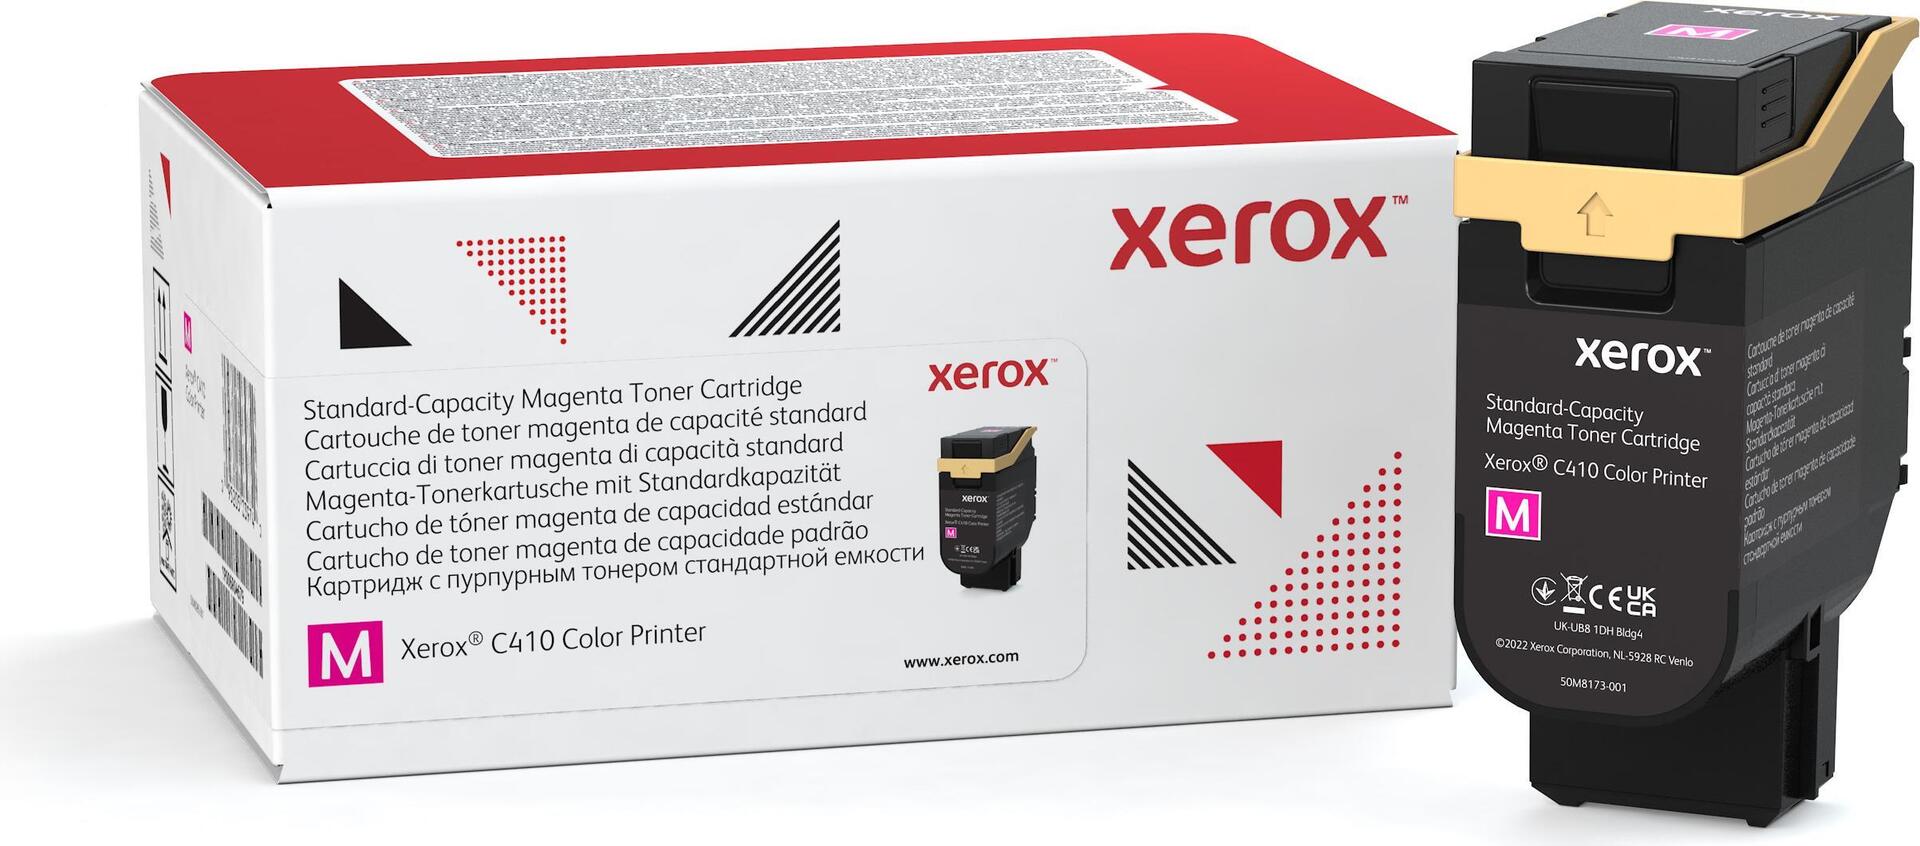 XEROX 006R04679 Toner Magenta für ca. 2.000 Seiten